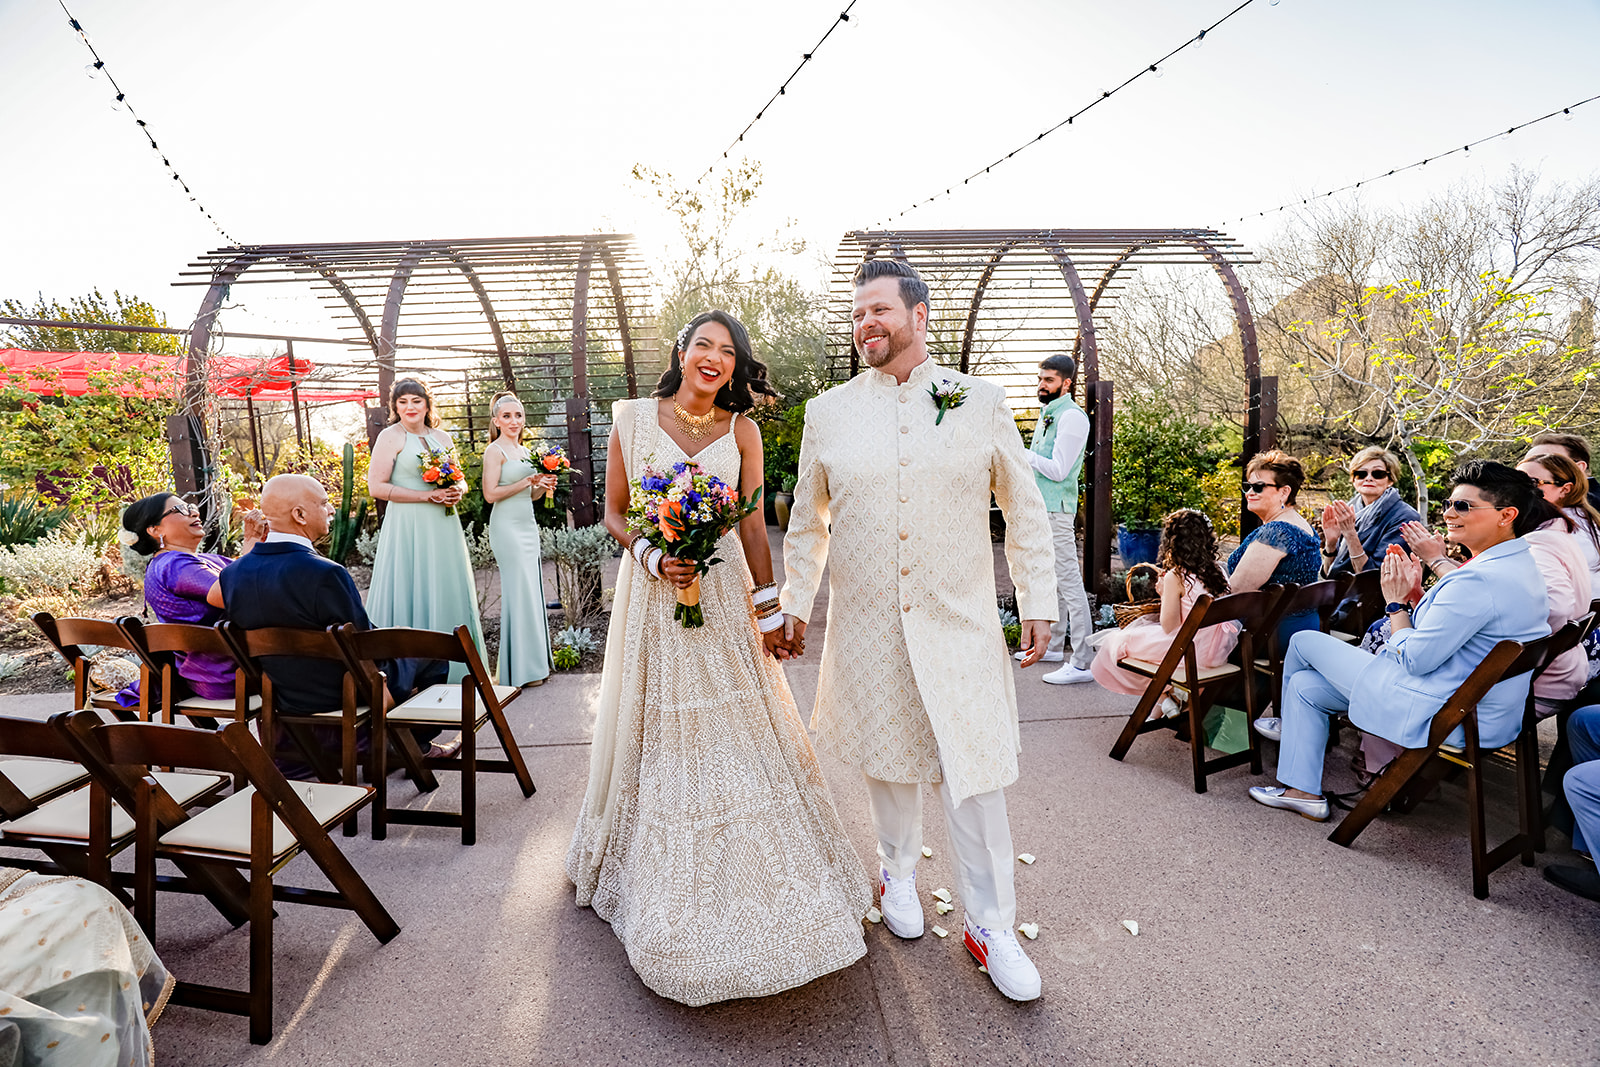 Luxury romantic destination Indian wedding at Steele Herb Garden at the Desert Botanical Garden in Phoenix